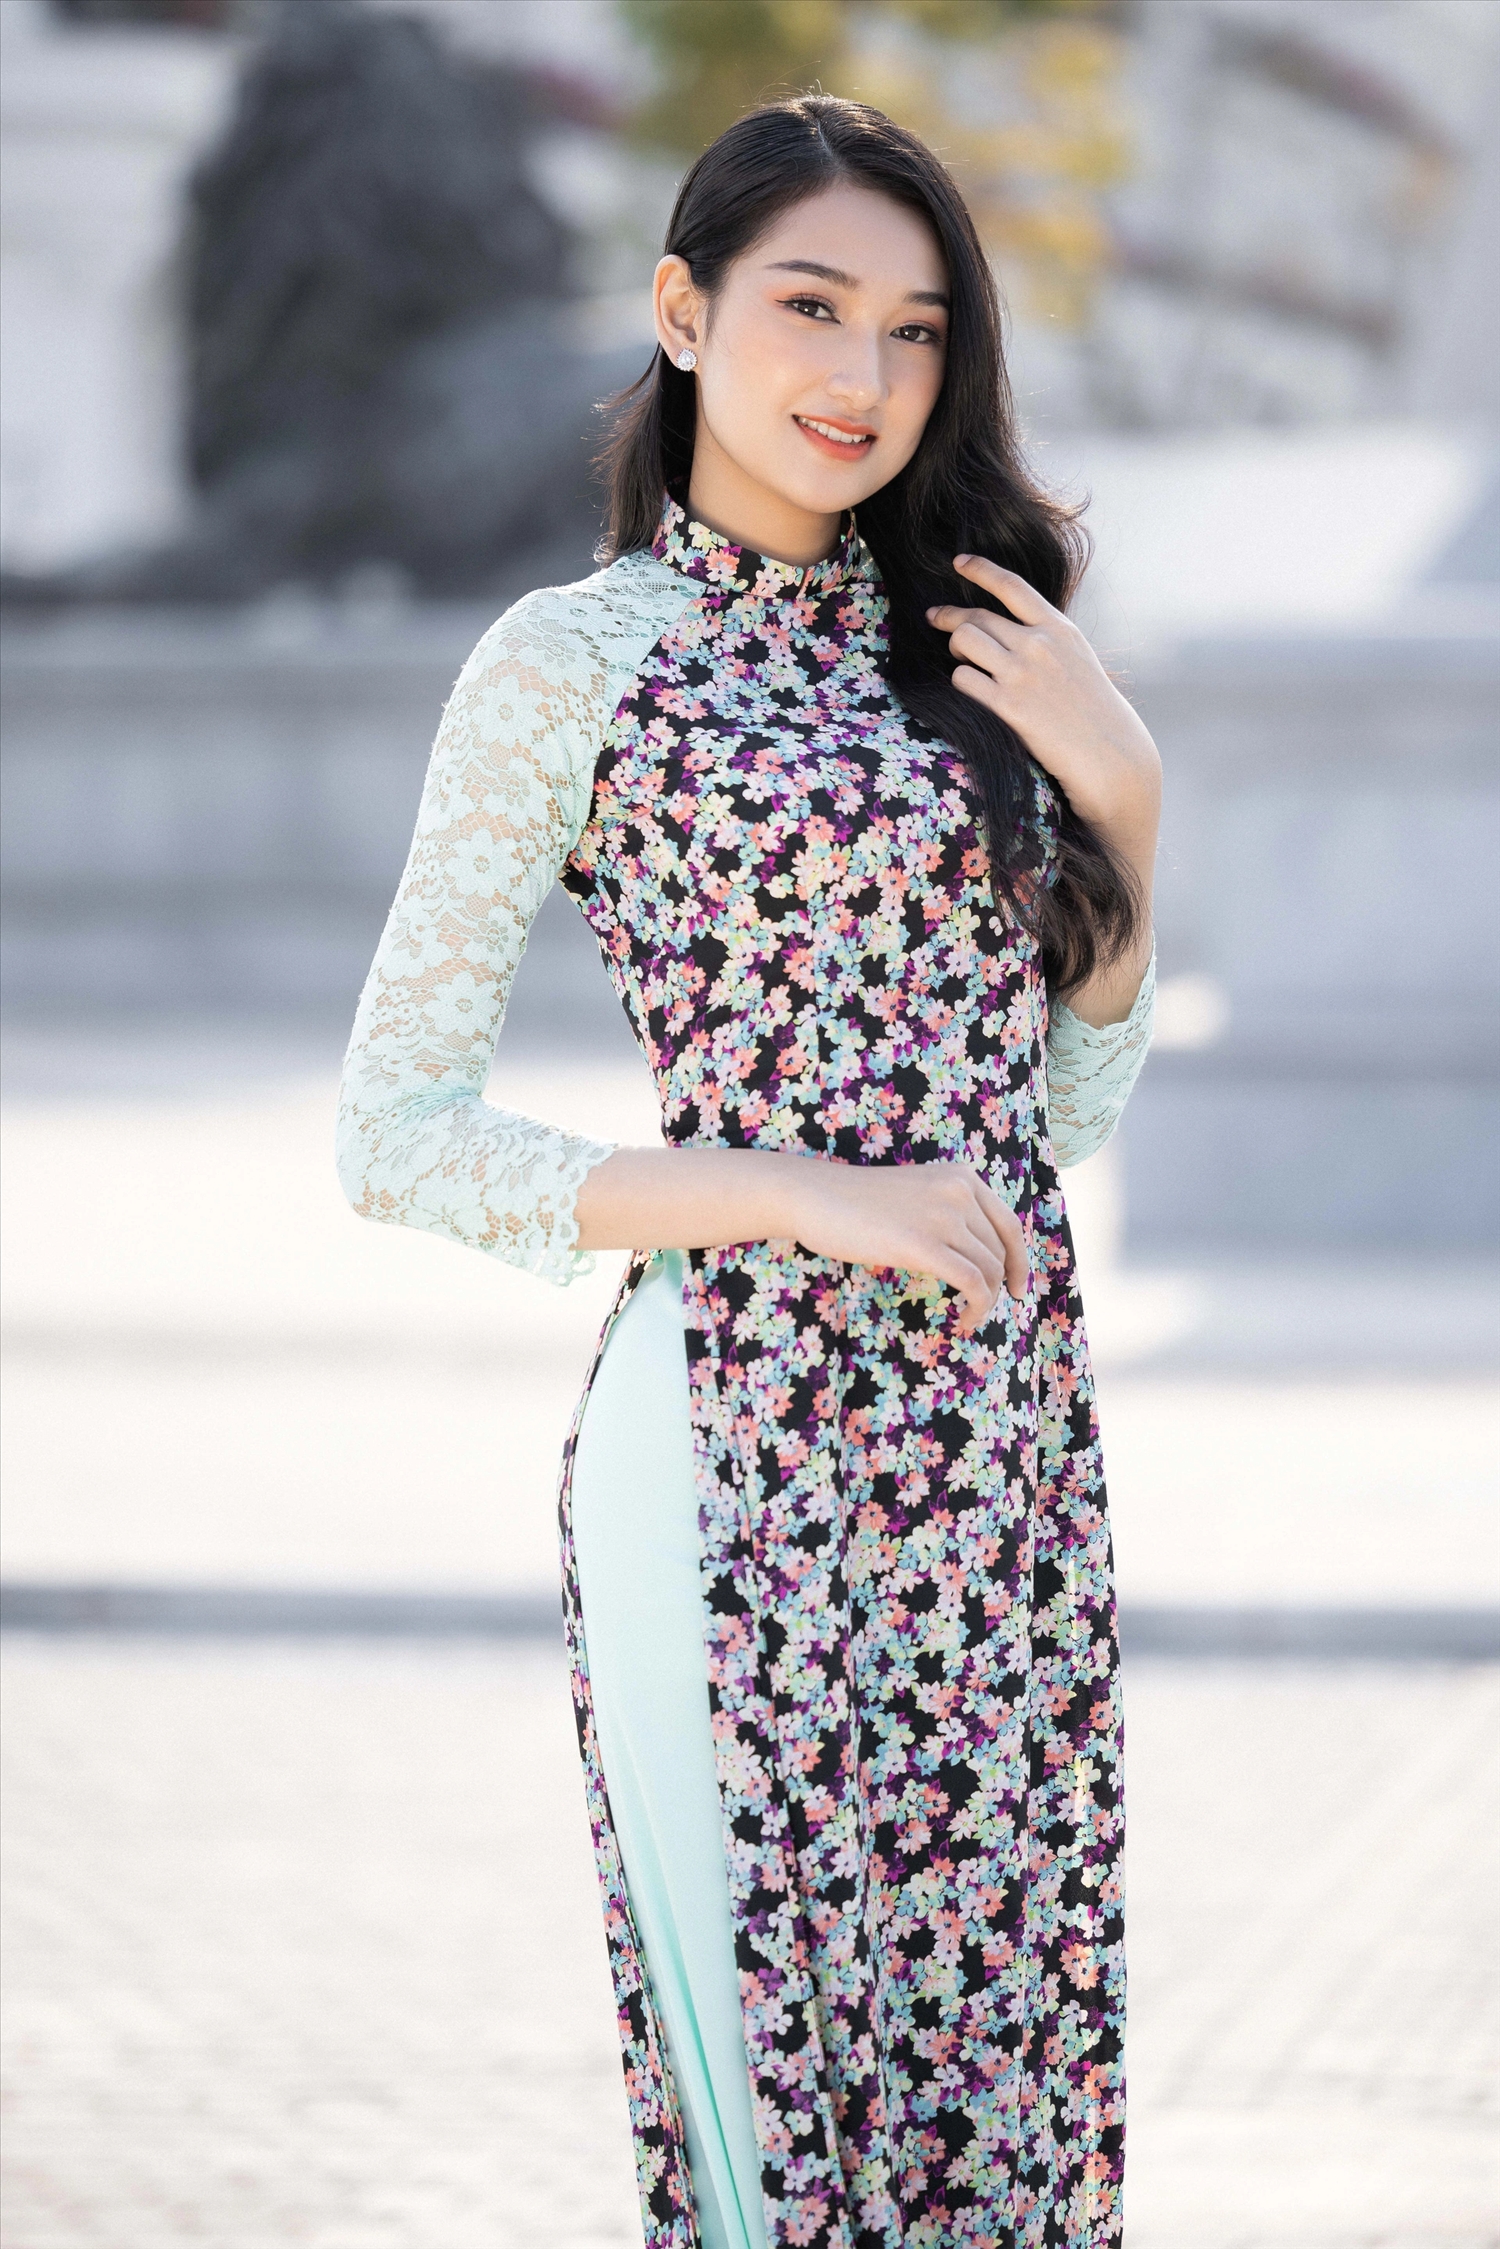 Thí sinh Nguyễn Thị Phương Linh trong trang phục áo dài